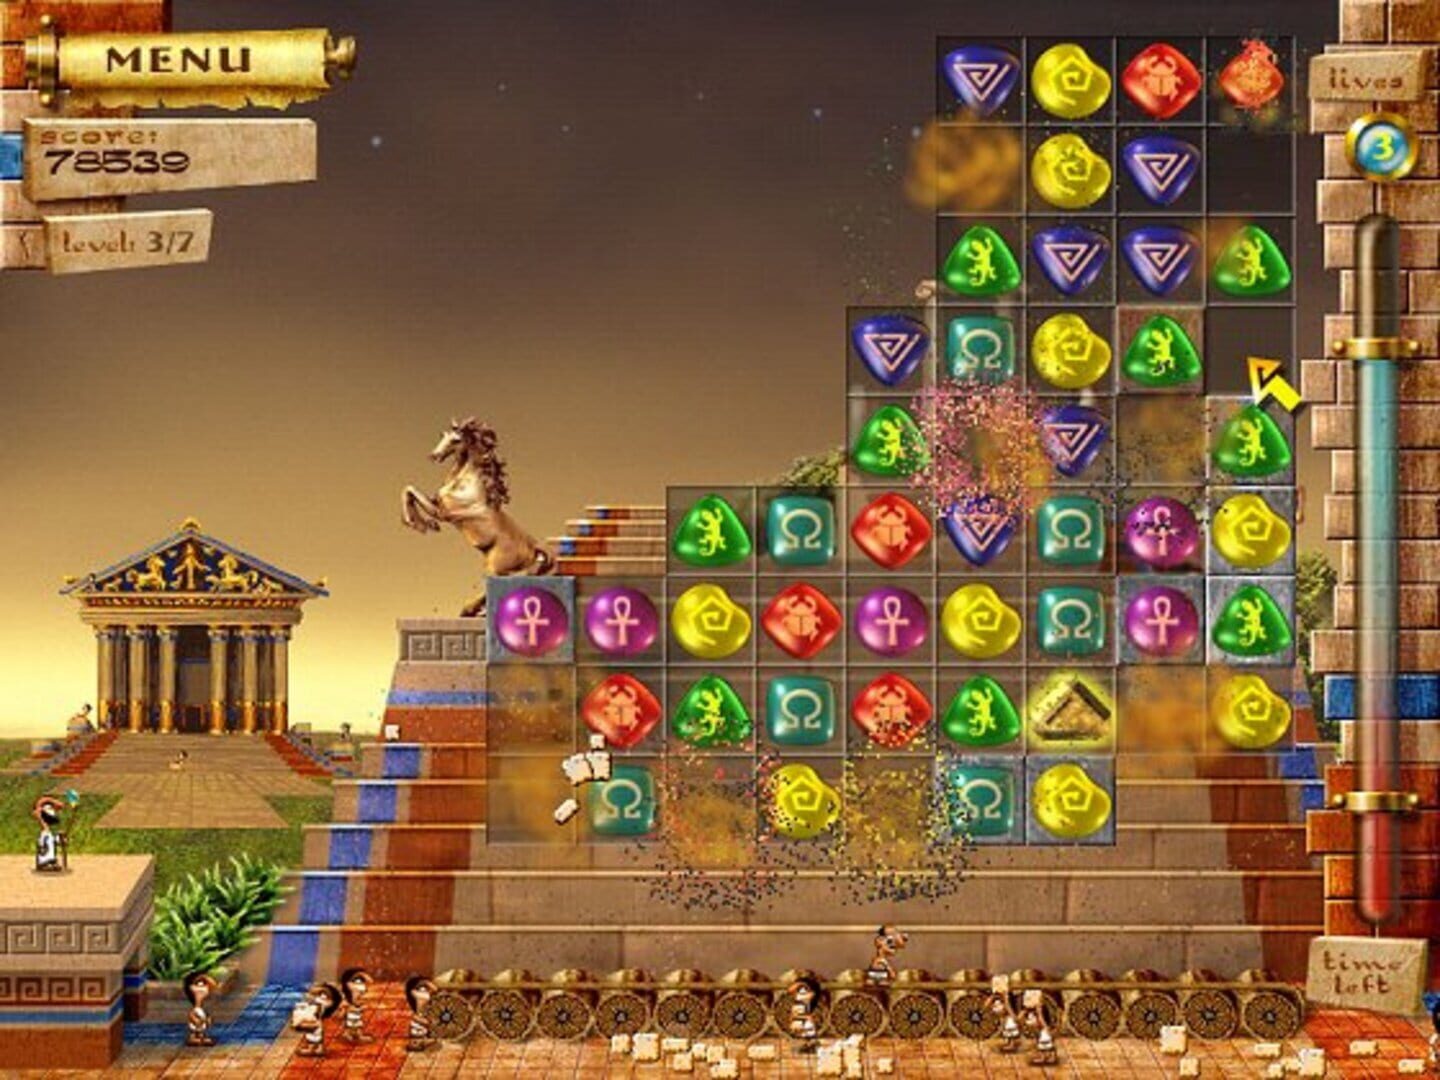 Игры 7 тура. 7 Wonders игра. Семь чудес света игра. Игра 7 чудес света Египет. Игра 7 Wonders пирамиды.